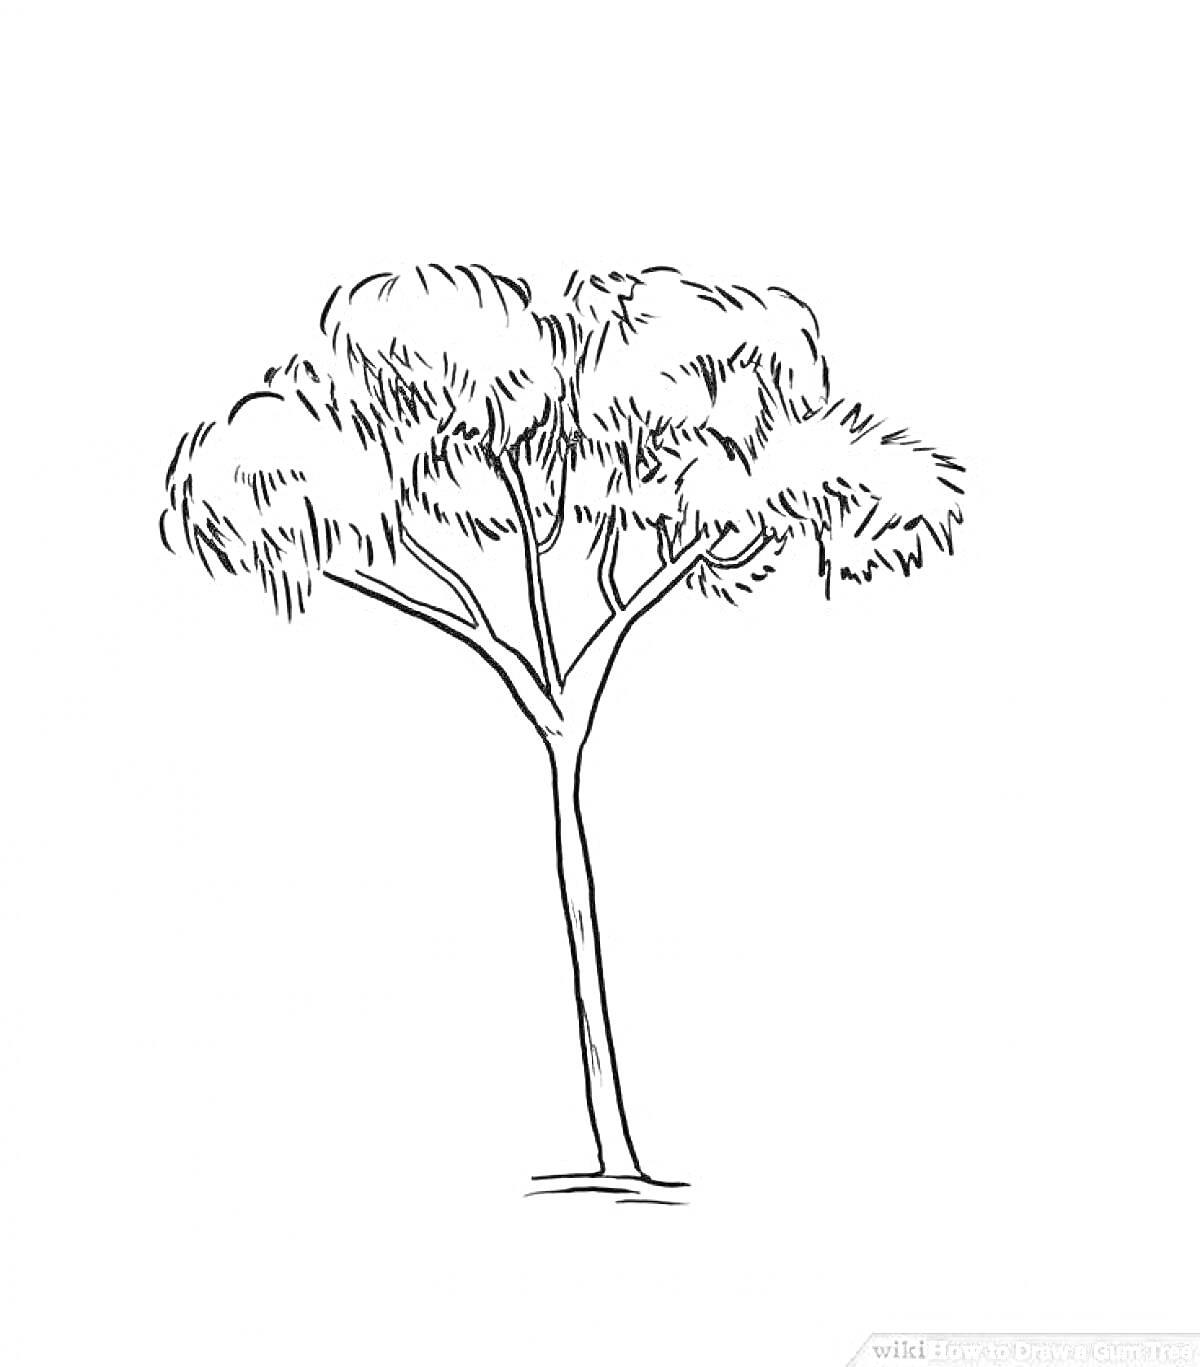 Раскраска Эвкалипт: одиночное дерево с густой кроной и длинным стволом